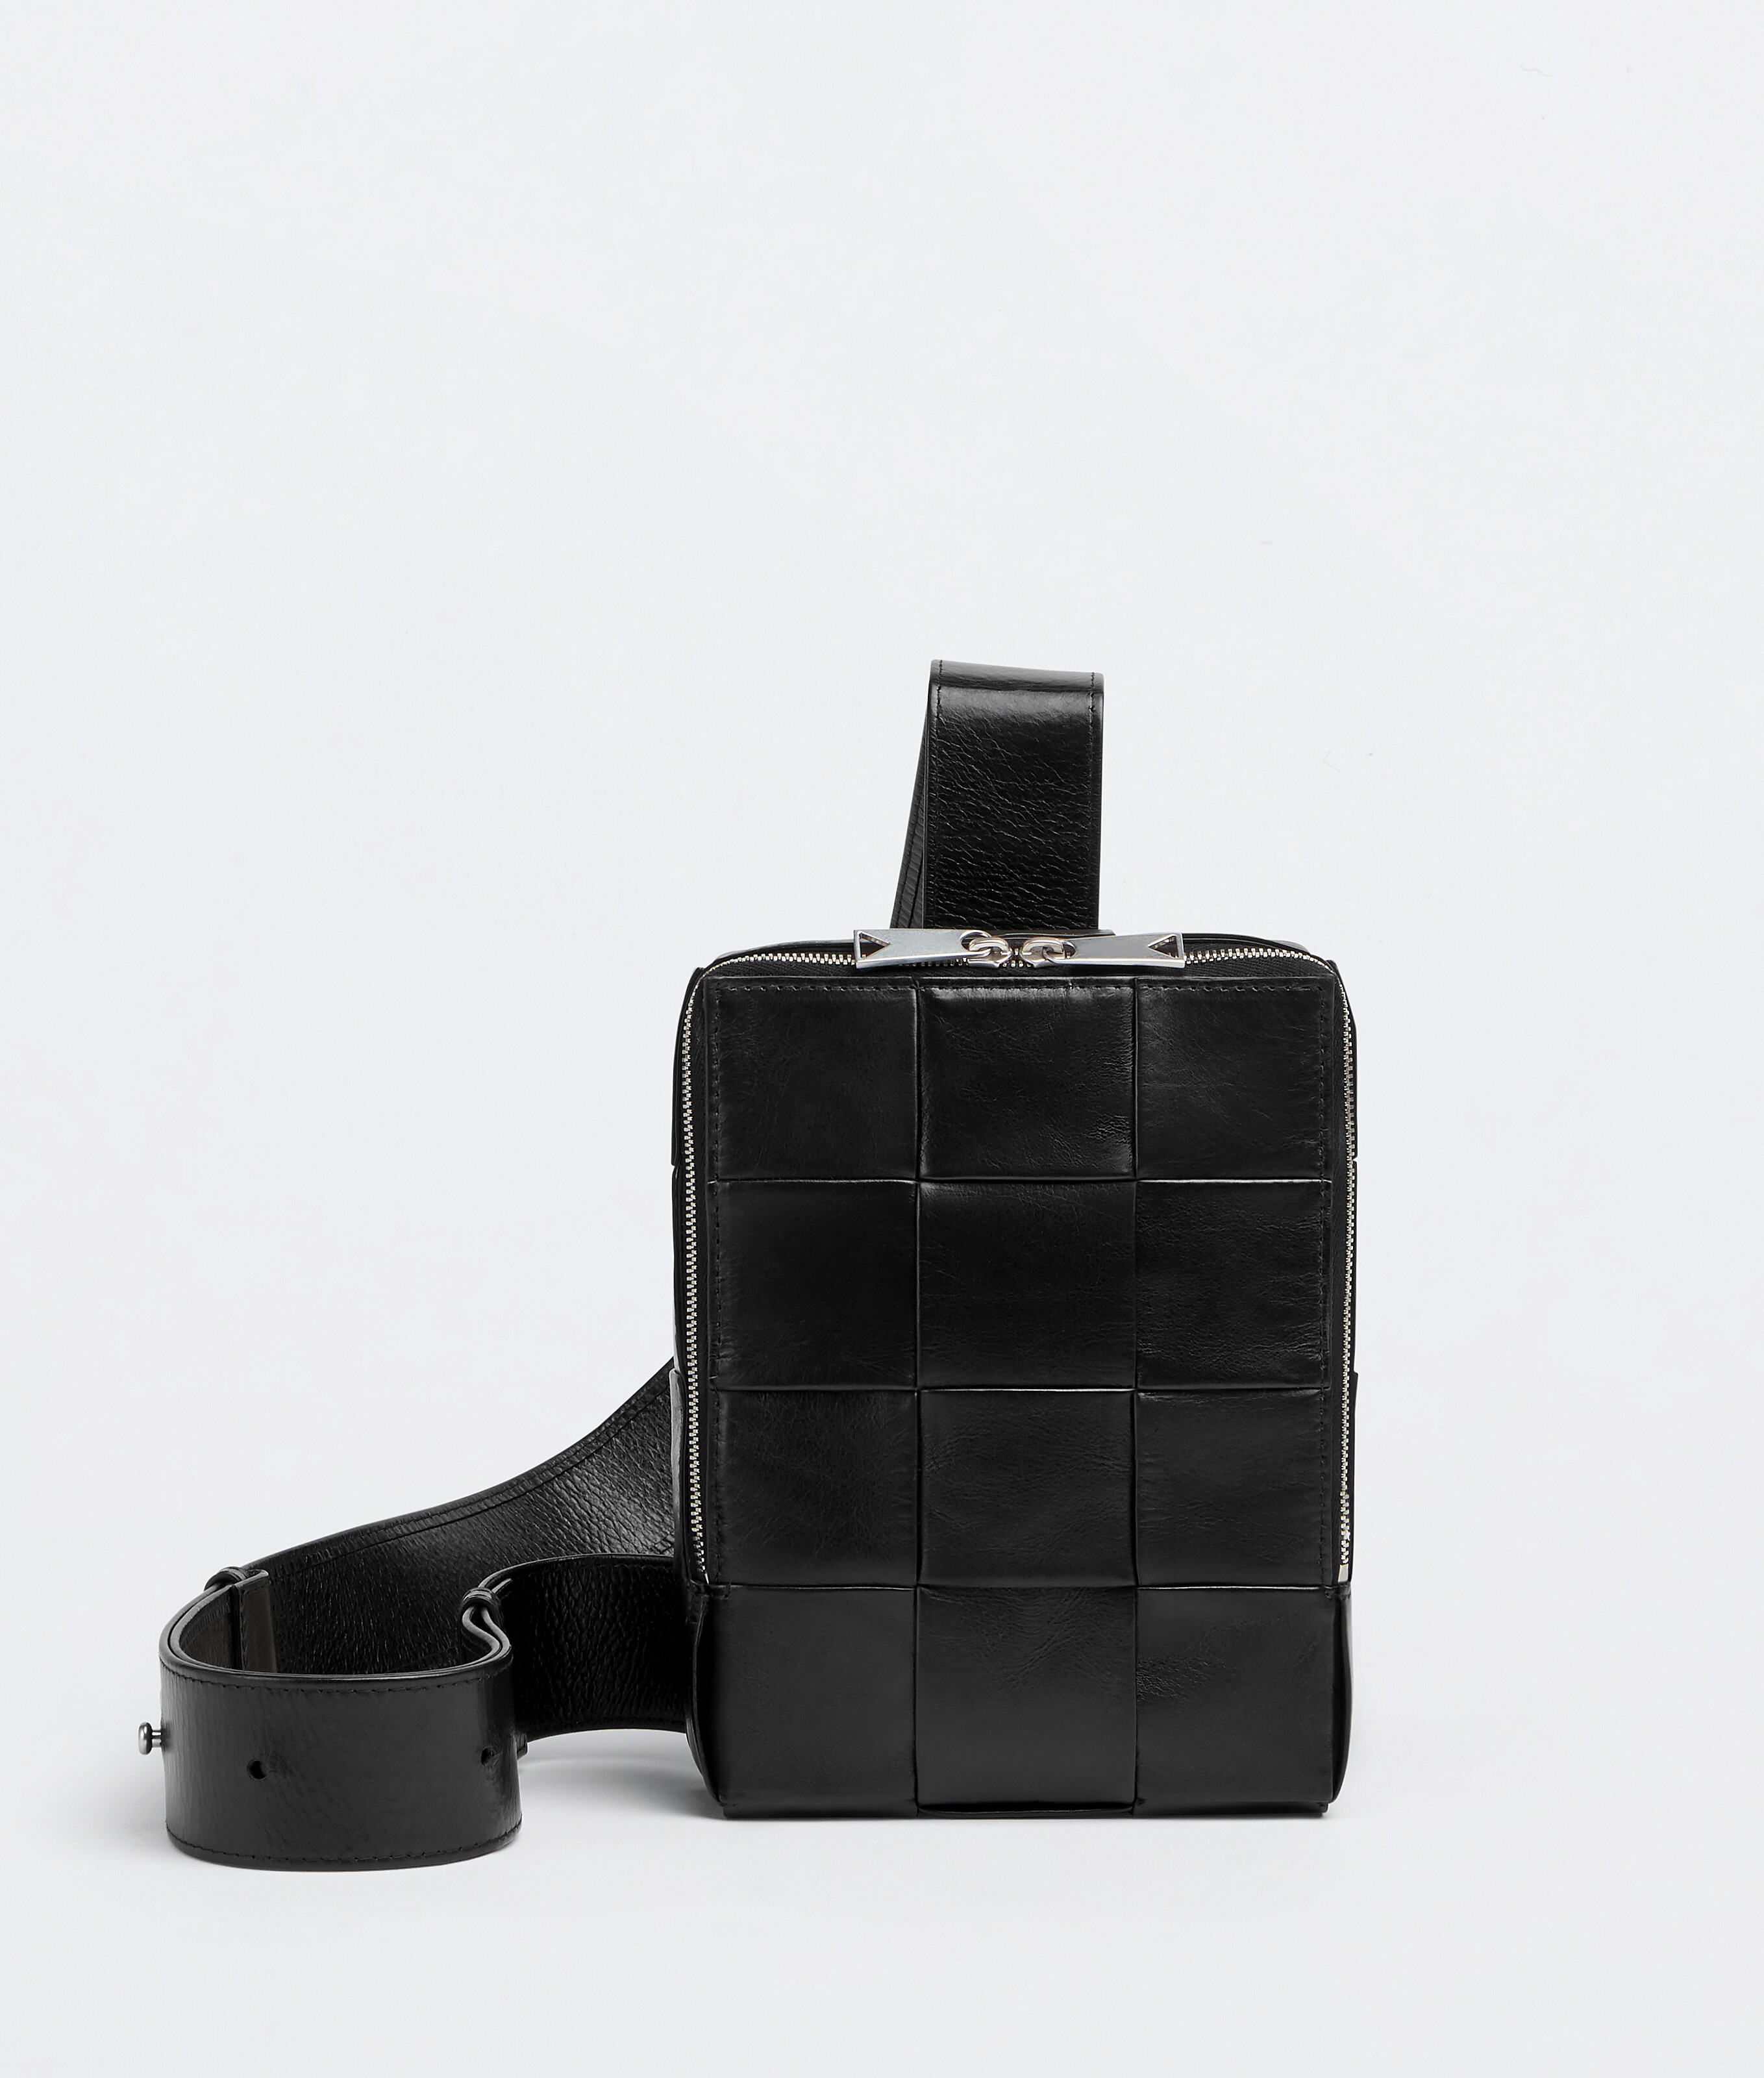 Bottega Veneta® Cassette Sling Bag in Black. Shop online now.